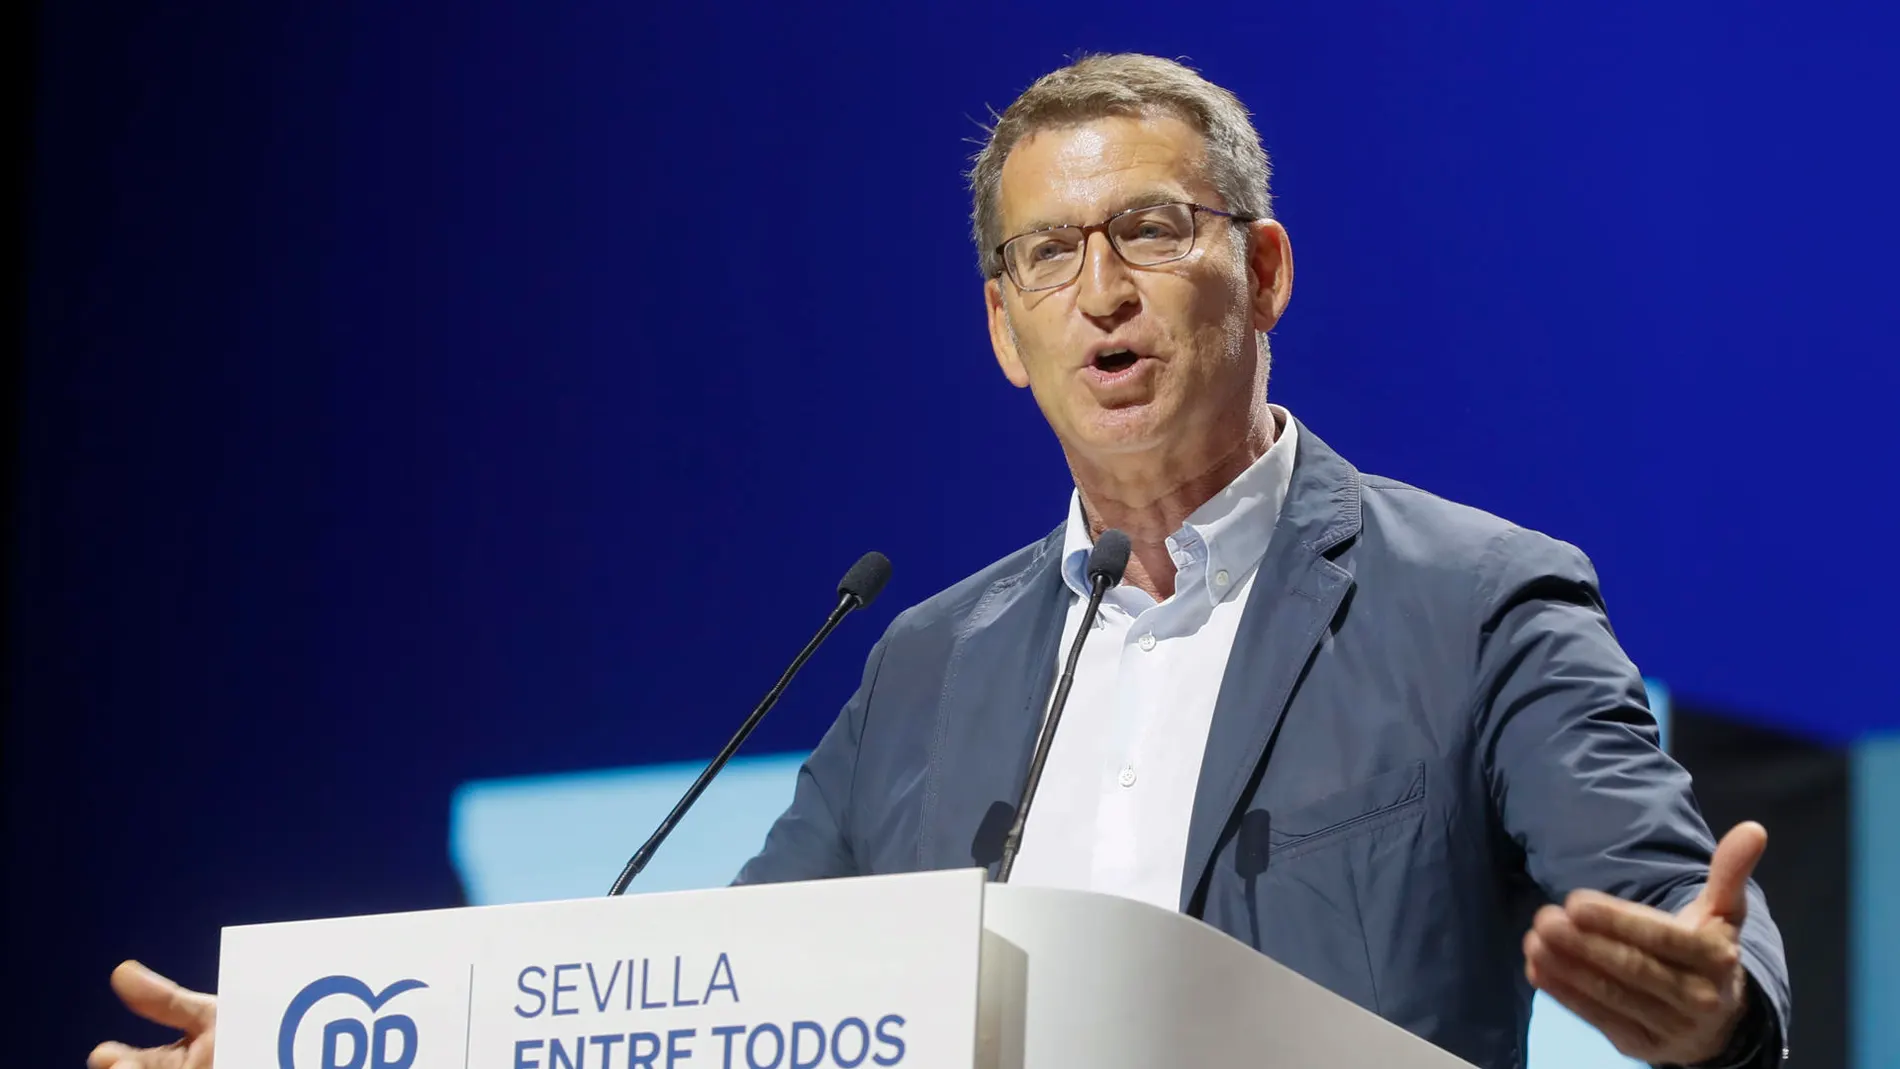 Feijóo pide el voto de los socialistas desencantados con "las mentiras" de Pedro Sánchez